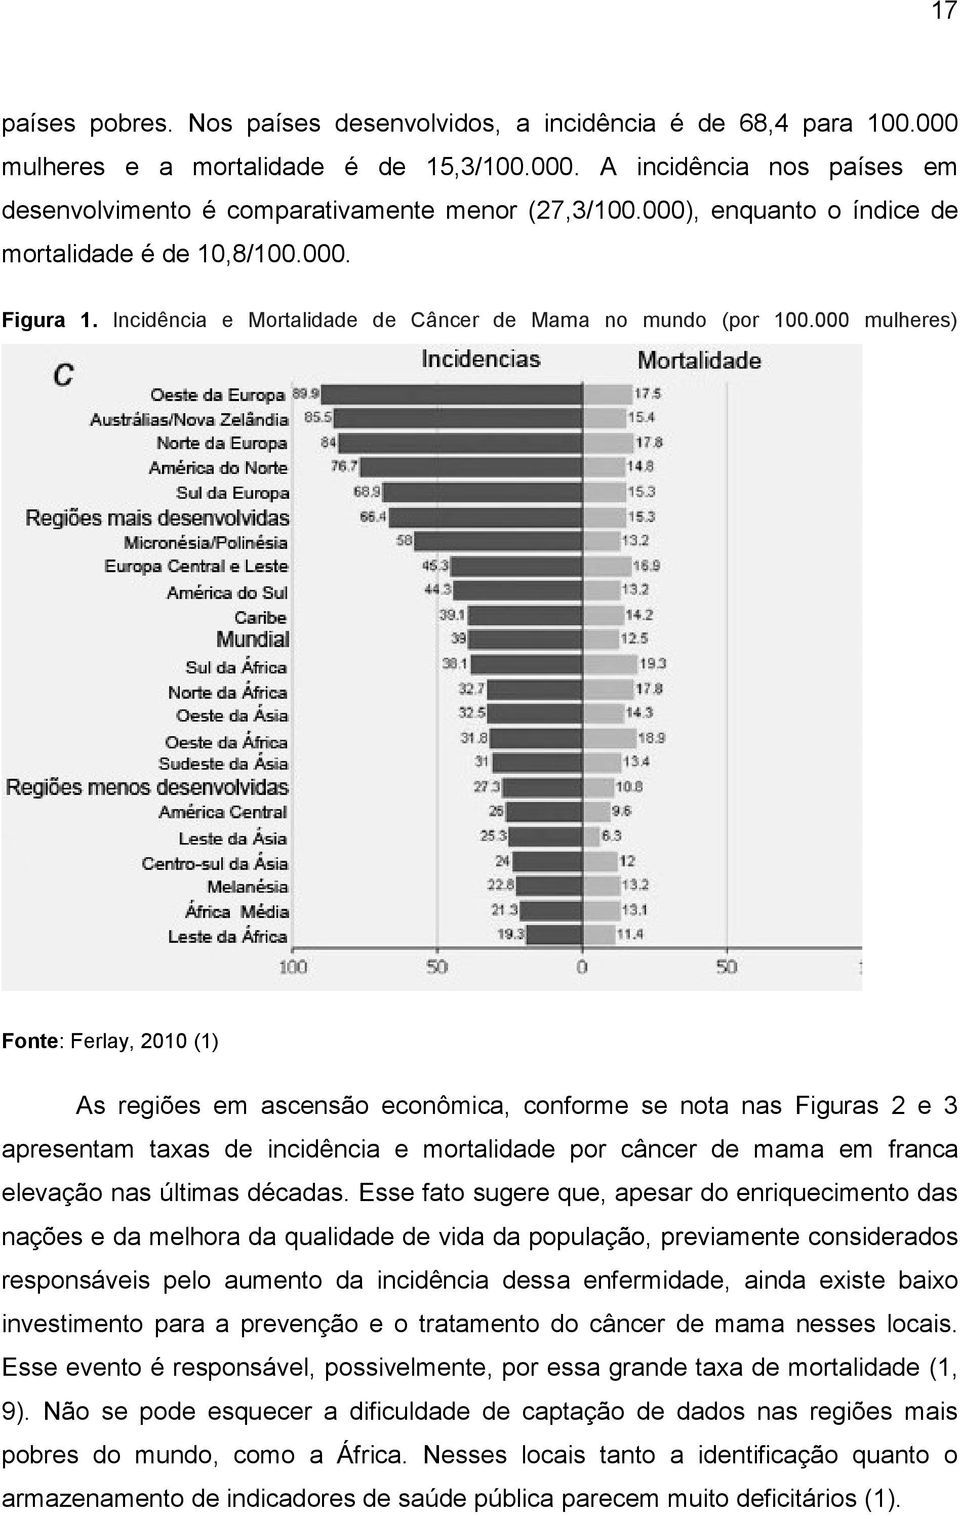 000 mulheres) Fonte: Ferlay, 2010 (1) As regiões em ascensão econômica, conforme se nota nas Figuras 2 e 3 apresentam taxas de incidência e mortalidade por câncer de mama em franca elevação nas